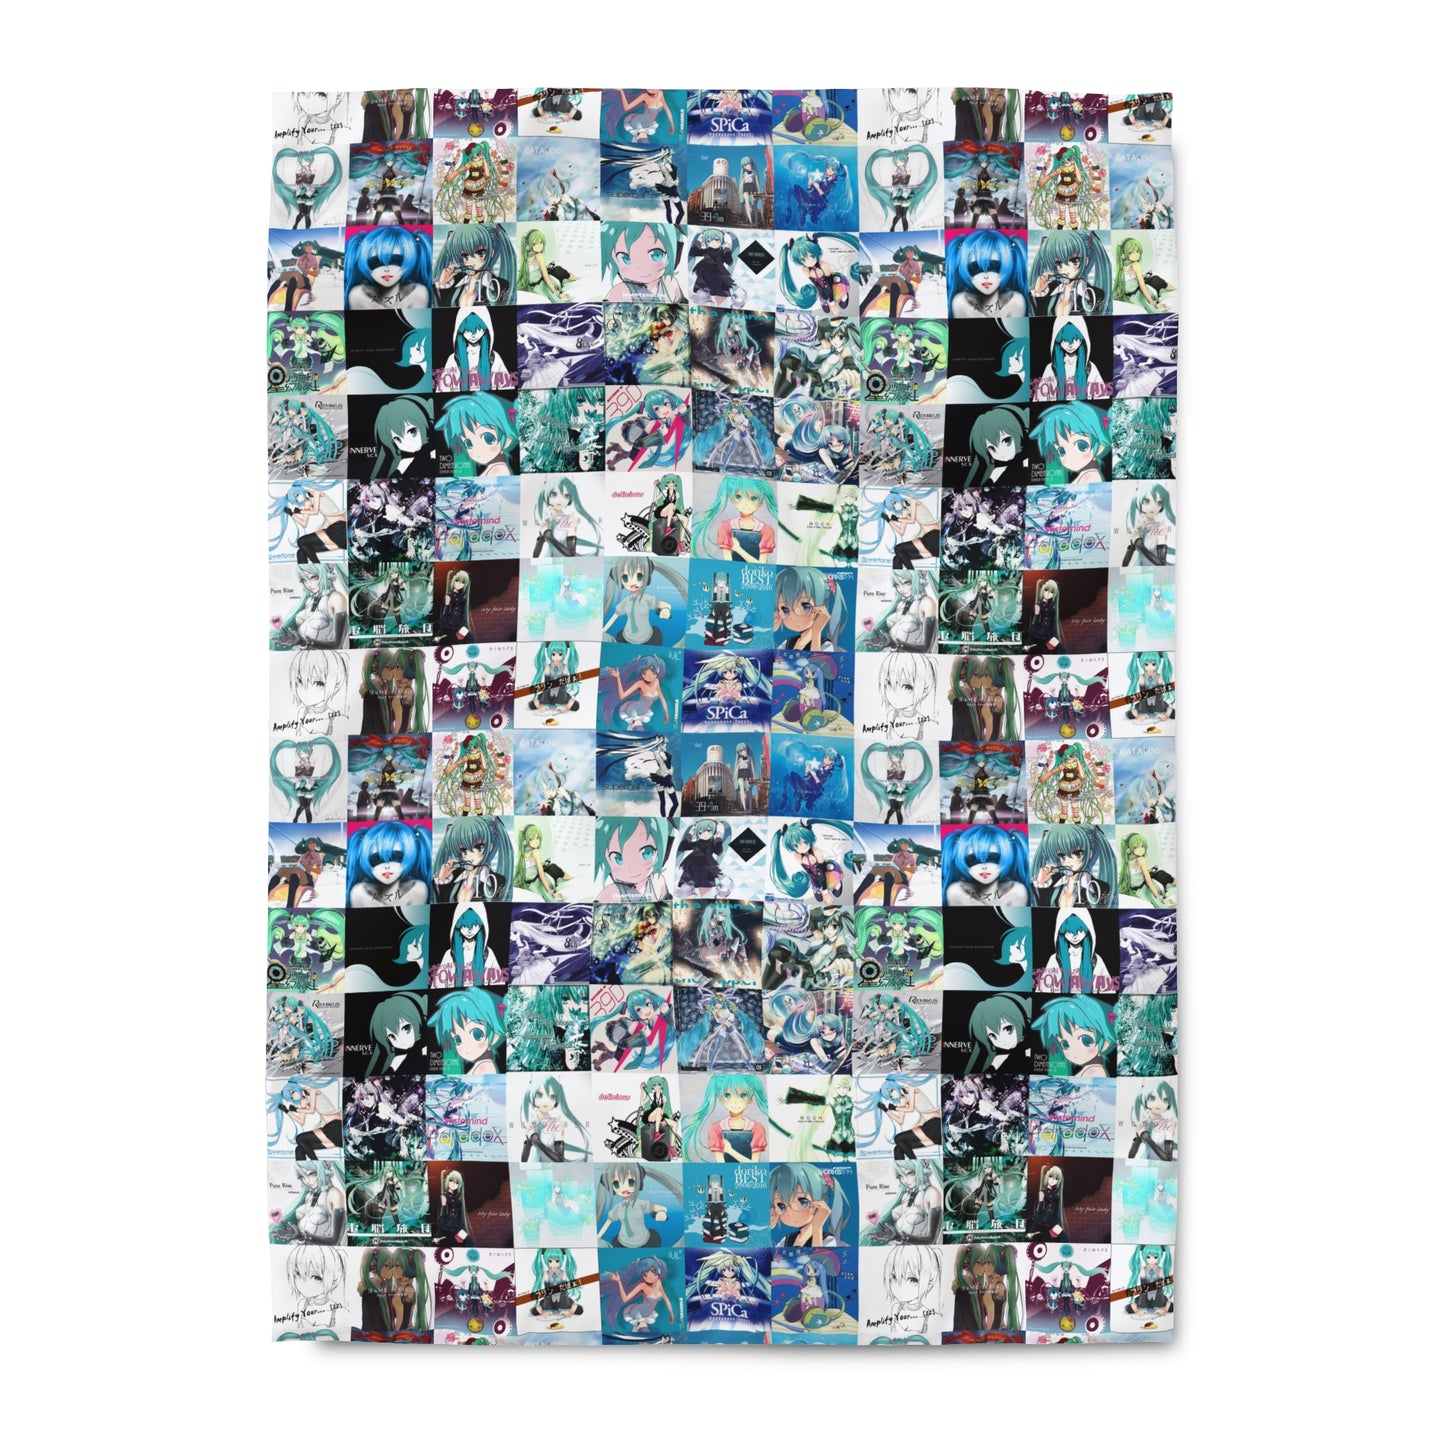 Hatsune Miku Album Cover Collage Duvet Cover